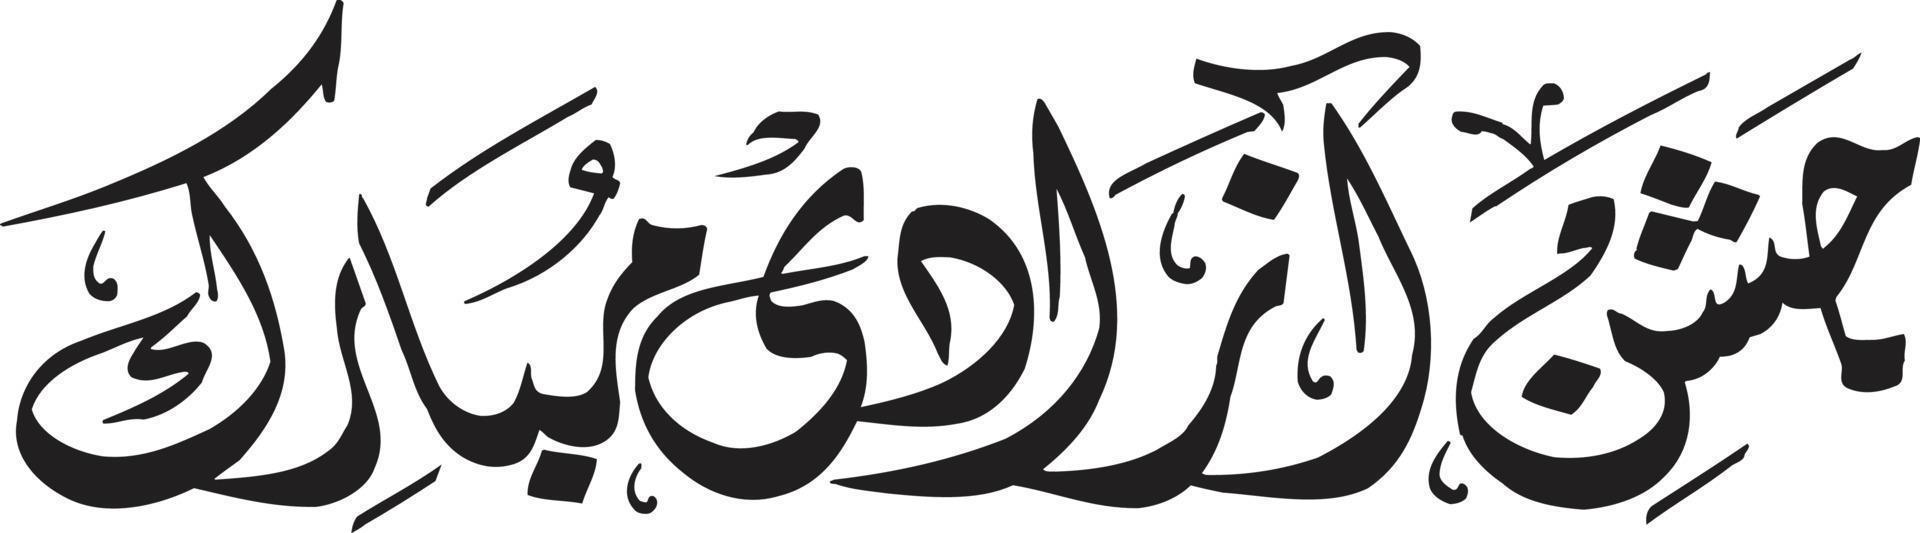 jashan azadi mubarak caligrafía islámica vector libre